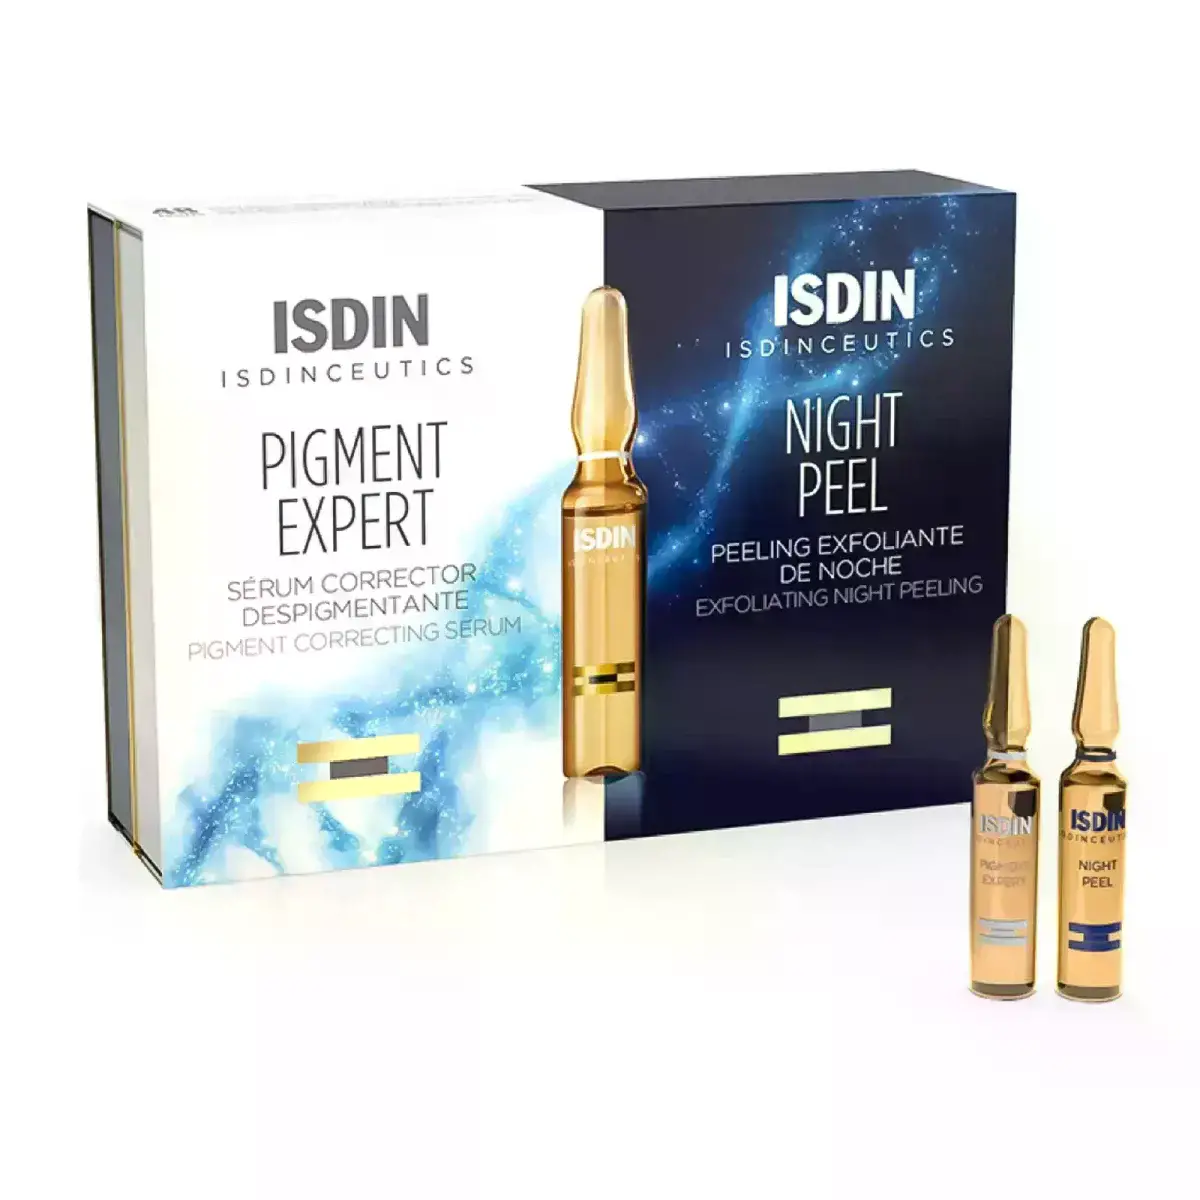 ISDIN Pigment Expert Ampule| Pigment Correcting